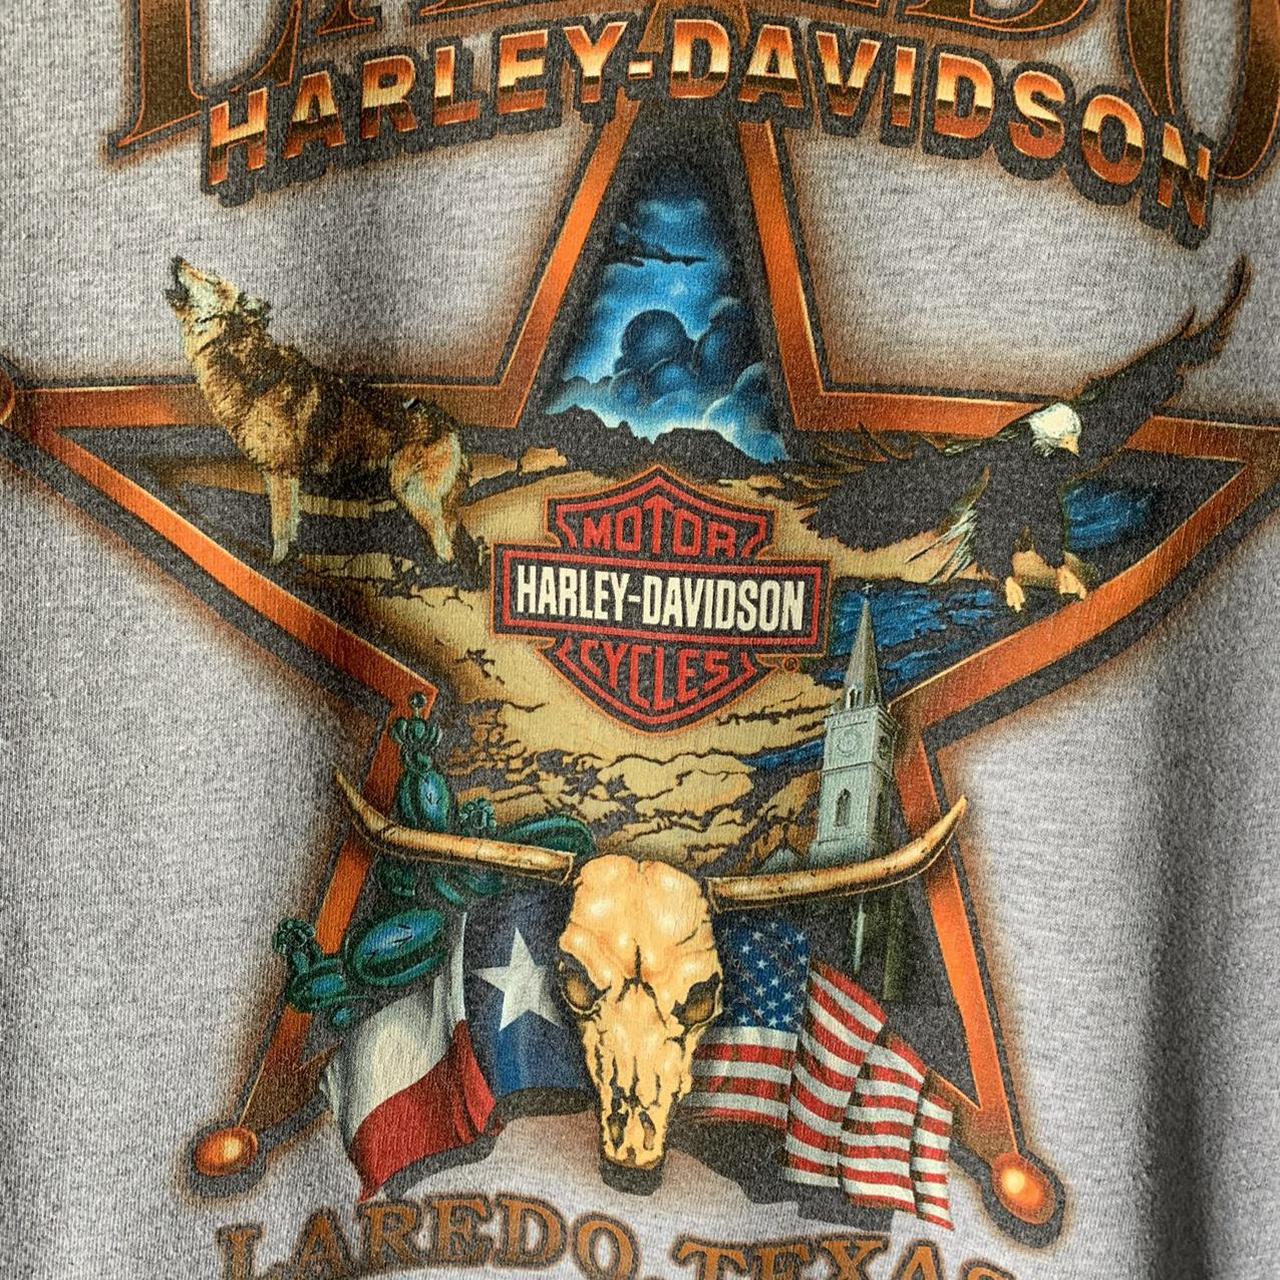 Product Image 3 - Harley Davidson Laredo Texas Long